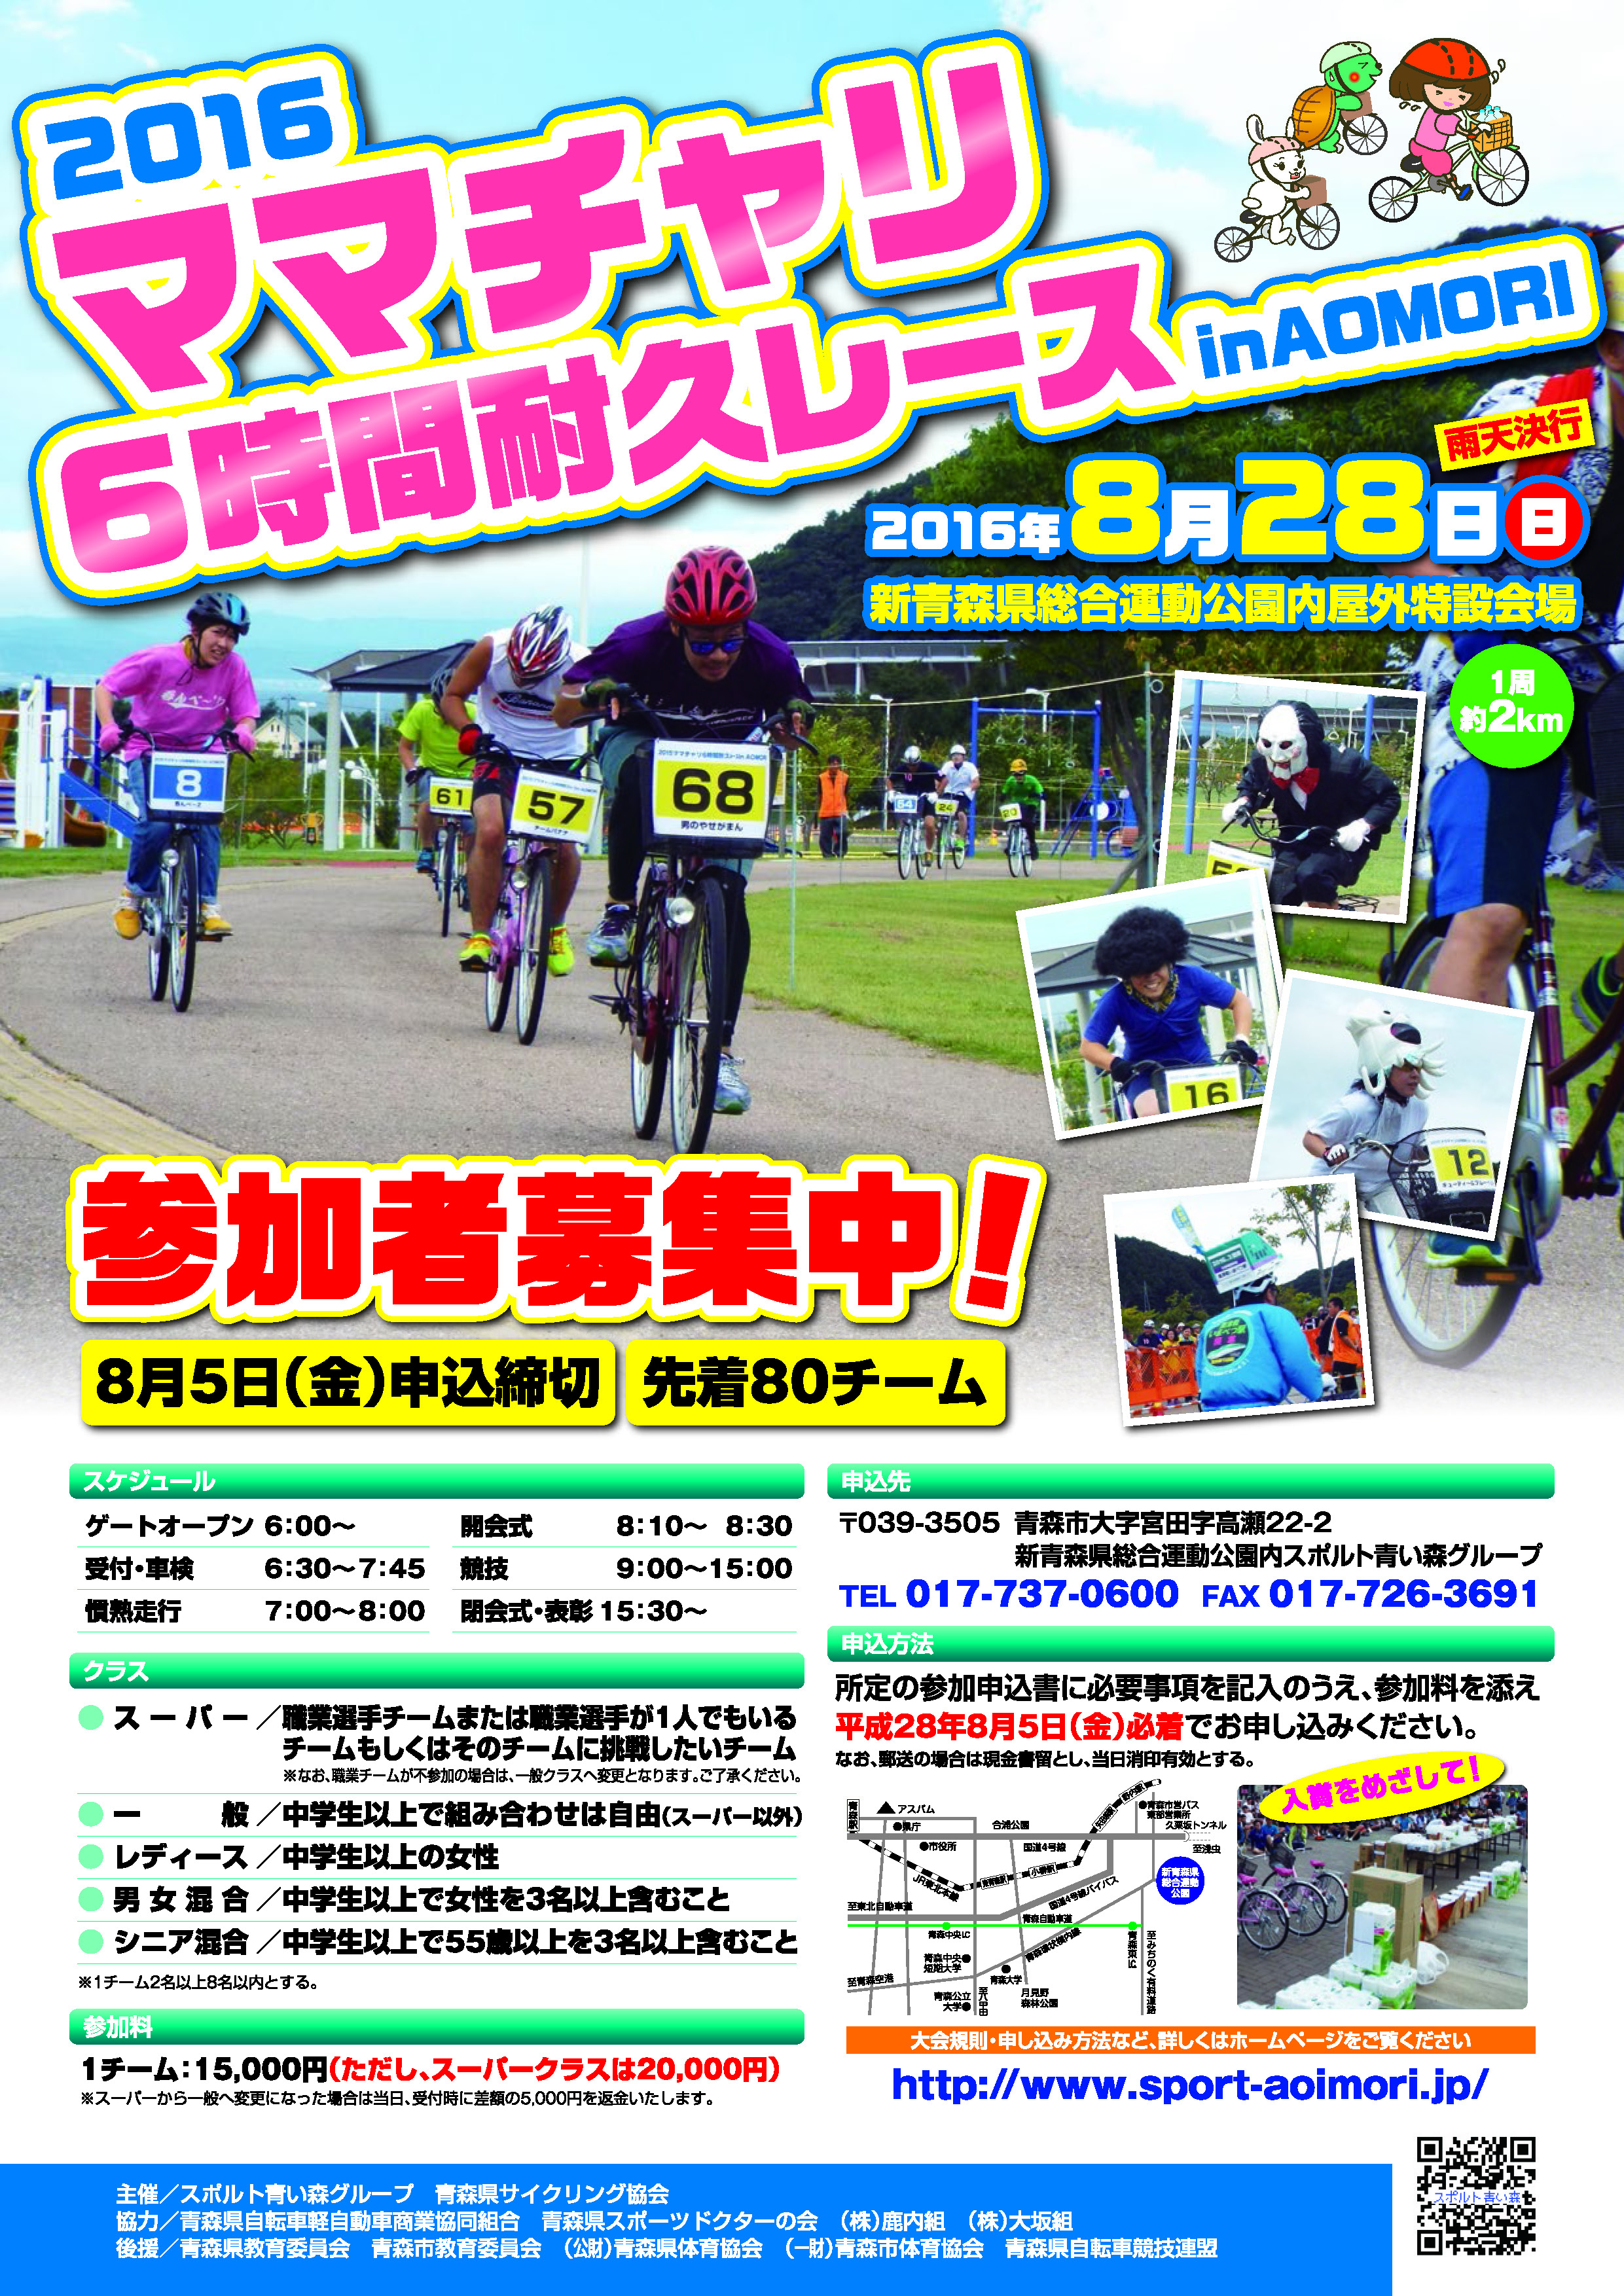 2016 ママチャリ 6 時間耐久レース in AOMORI